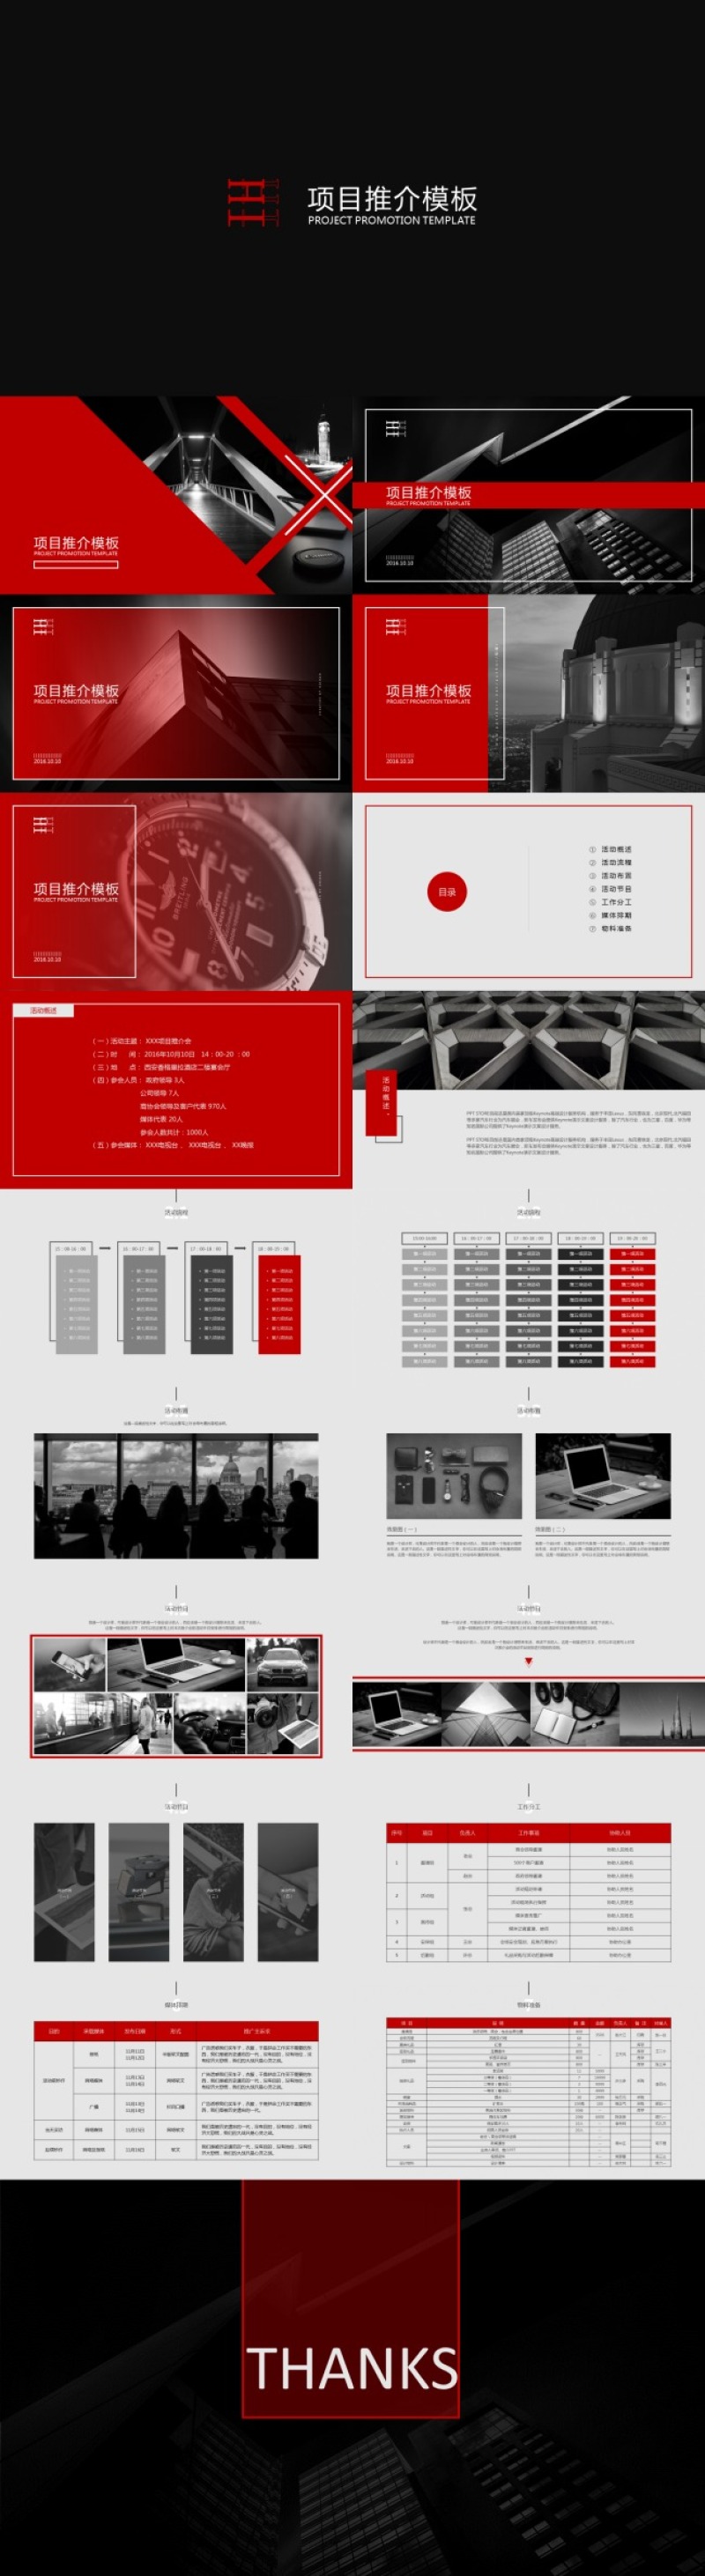 酷黑红配色时尚杂志风完整框架项目推介会介绍宣传ppt模板